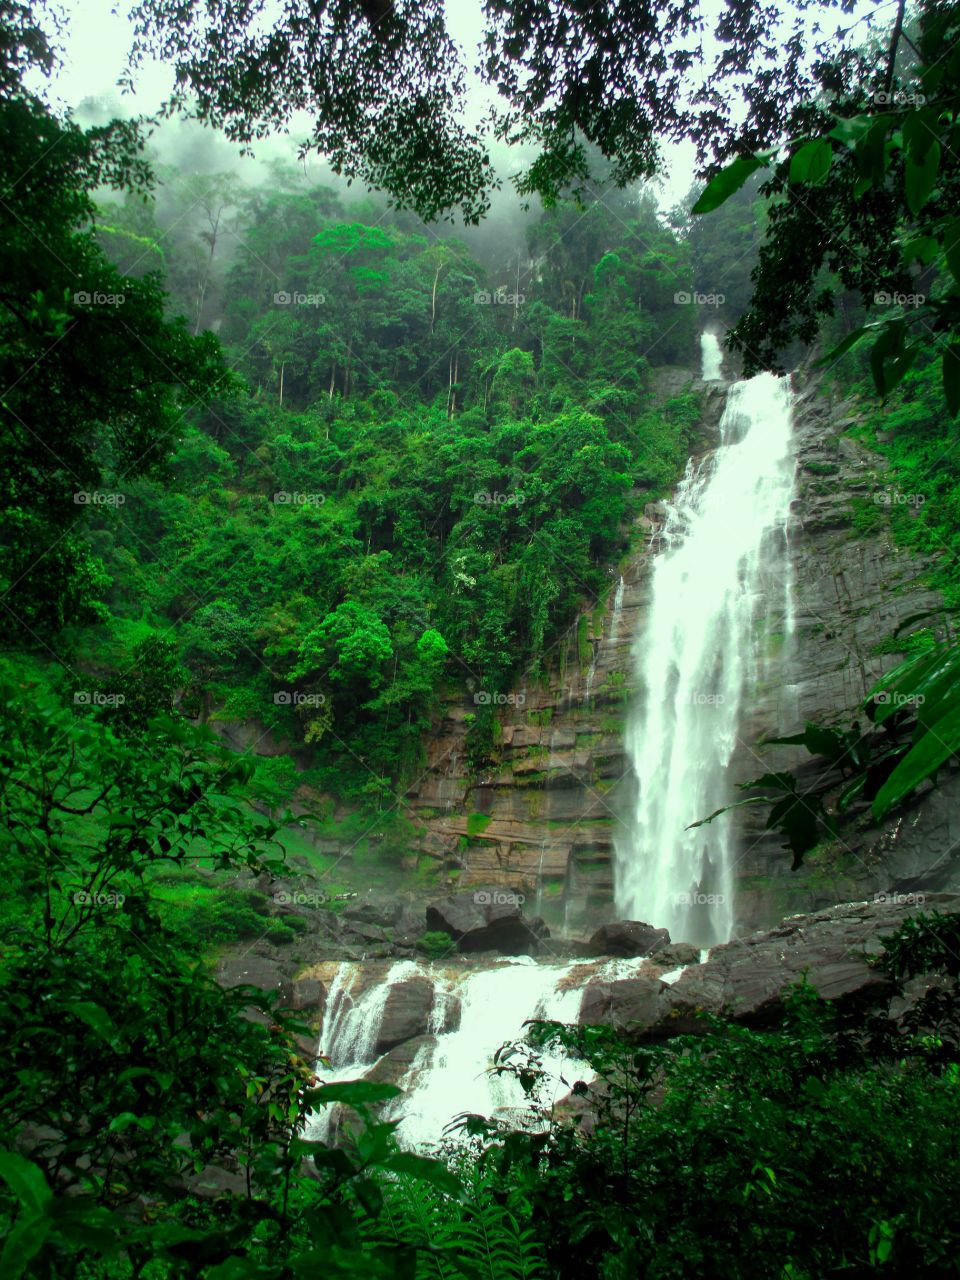 Mapalana falls,Palabaddala,Ratnapura,Srilanka.